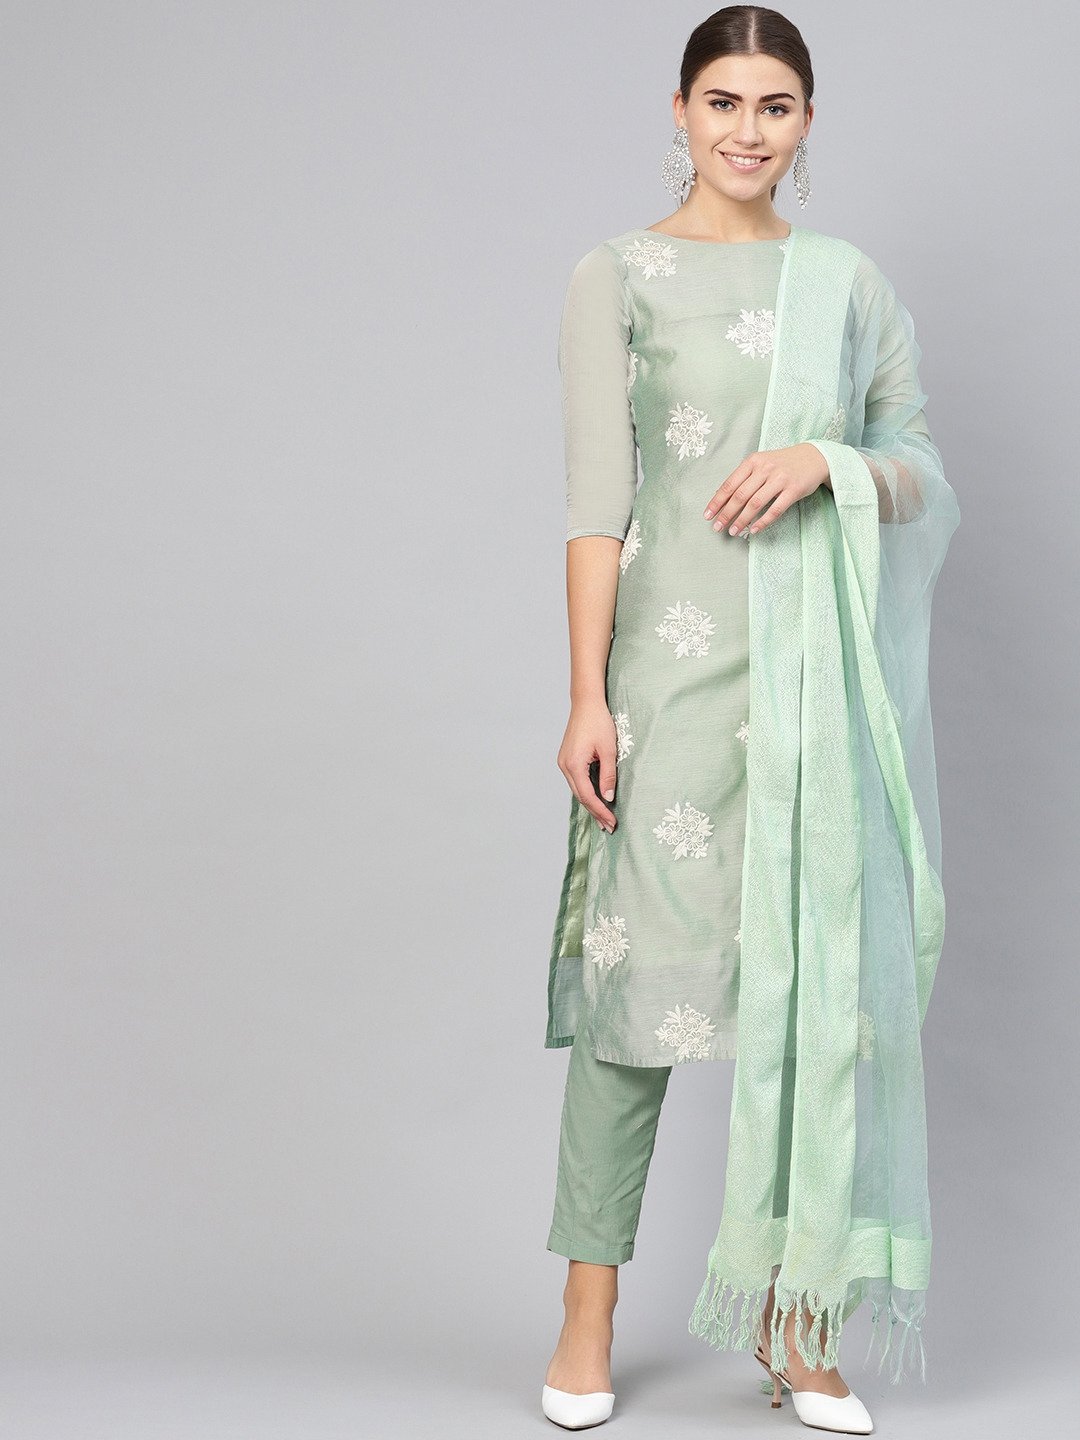 Indian Dress Kurta Set Women Off-white & Blue Printed Kurta With Palazzos  and Dupatta Pure Cotton Kurti With Palazzo Pants Set - Etsy